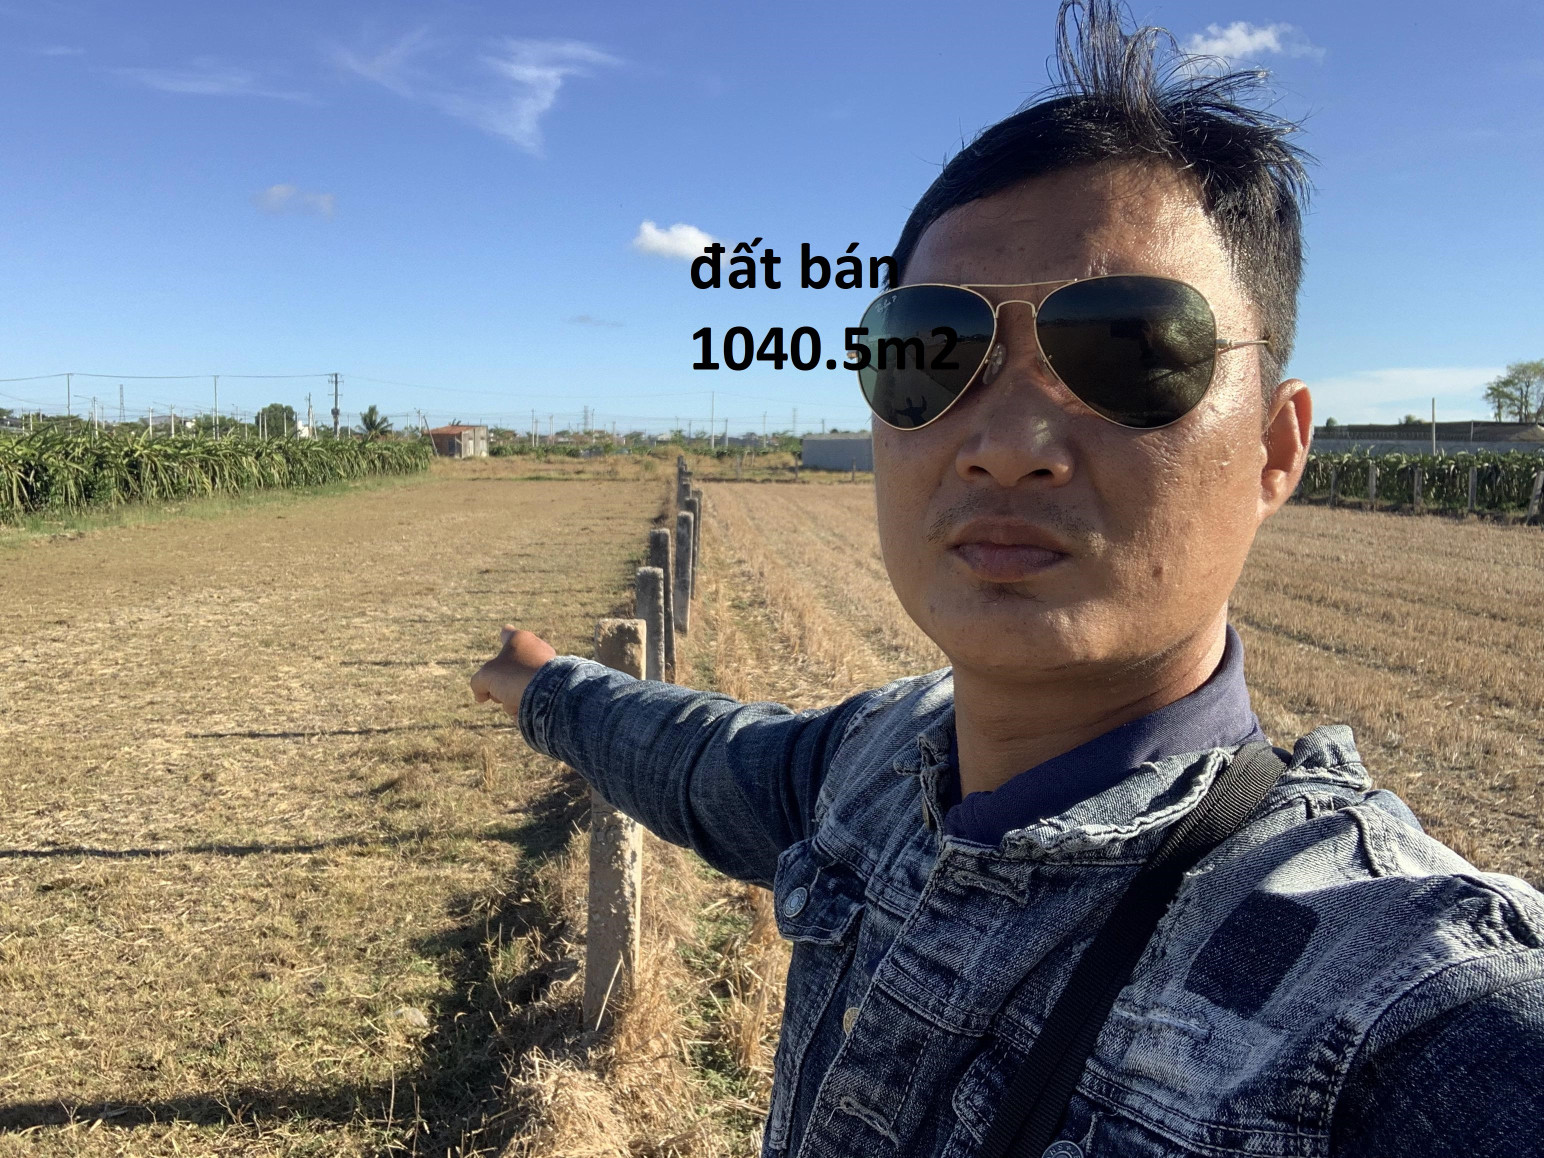 Bán  đất nông nghiệp 1040.5m² , giá 1tỷ tại đường Quốc lộ 1A, Xã Hàm Thắng, Huyện Hàm Thuận Bắc, Bình Thuận